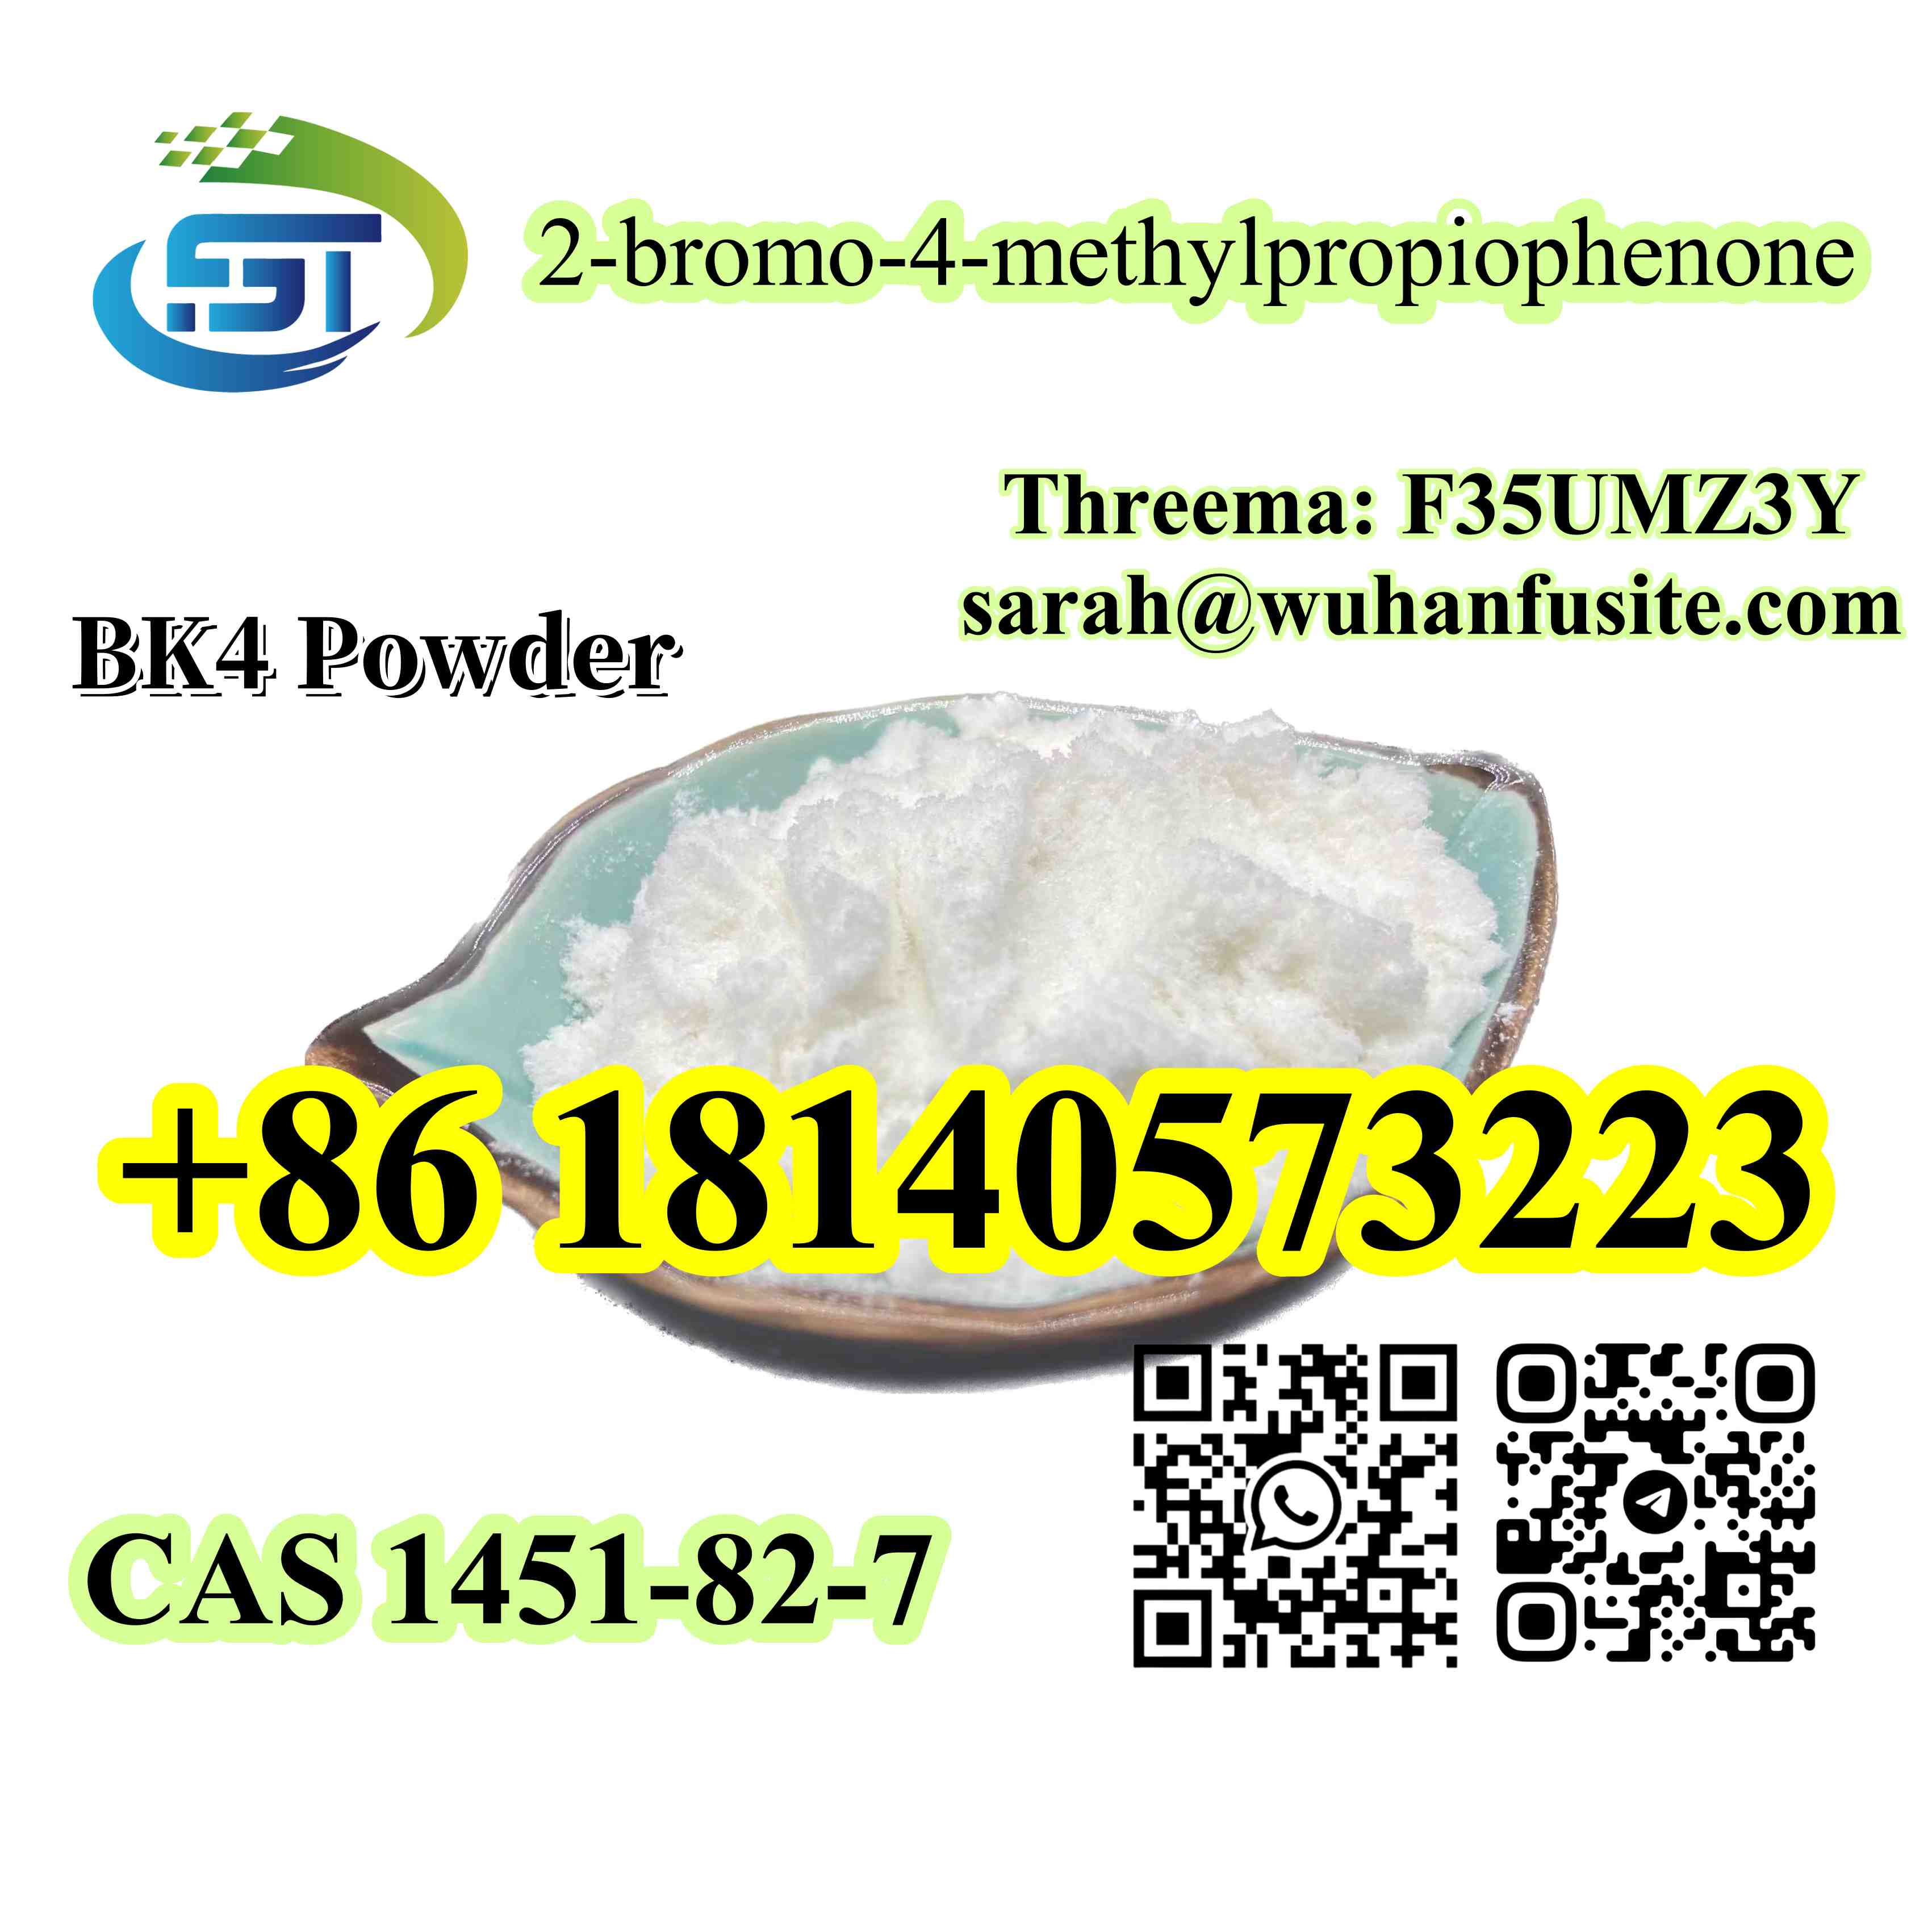 CAS 1451827 BK4 powder 2bromo4methylpropiophenone Bromo - California - Bakersfield ID1532949 3